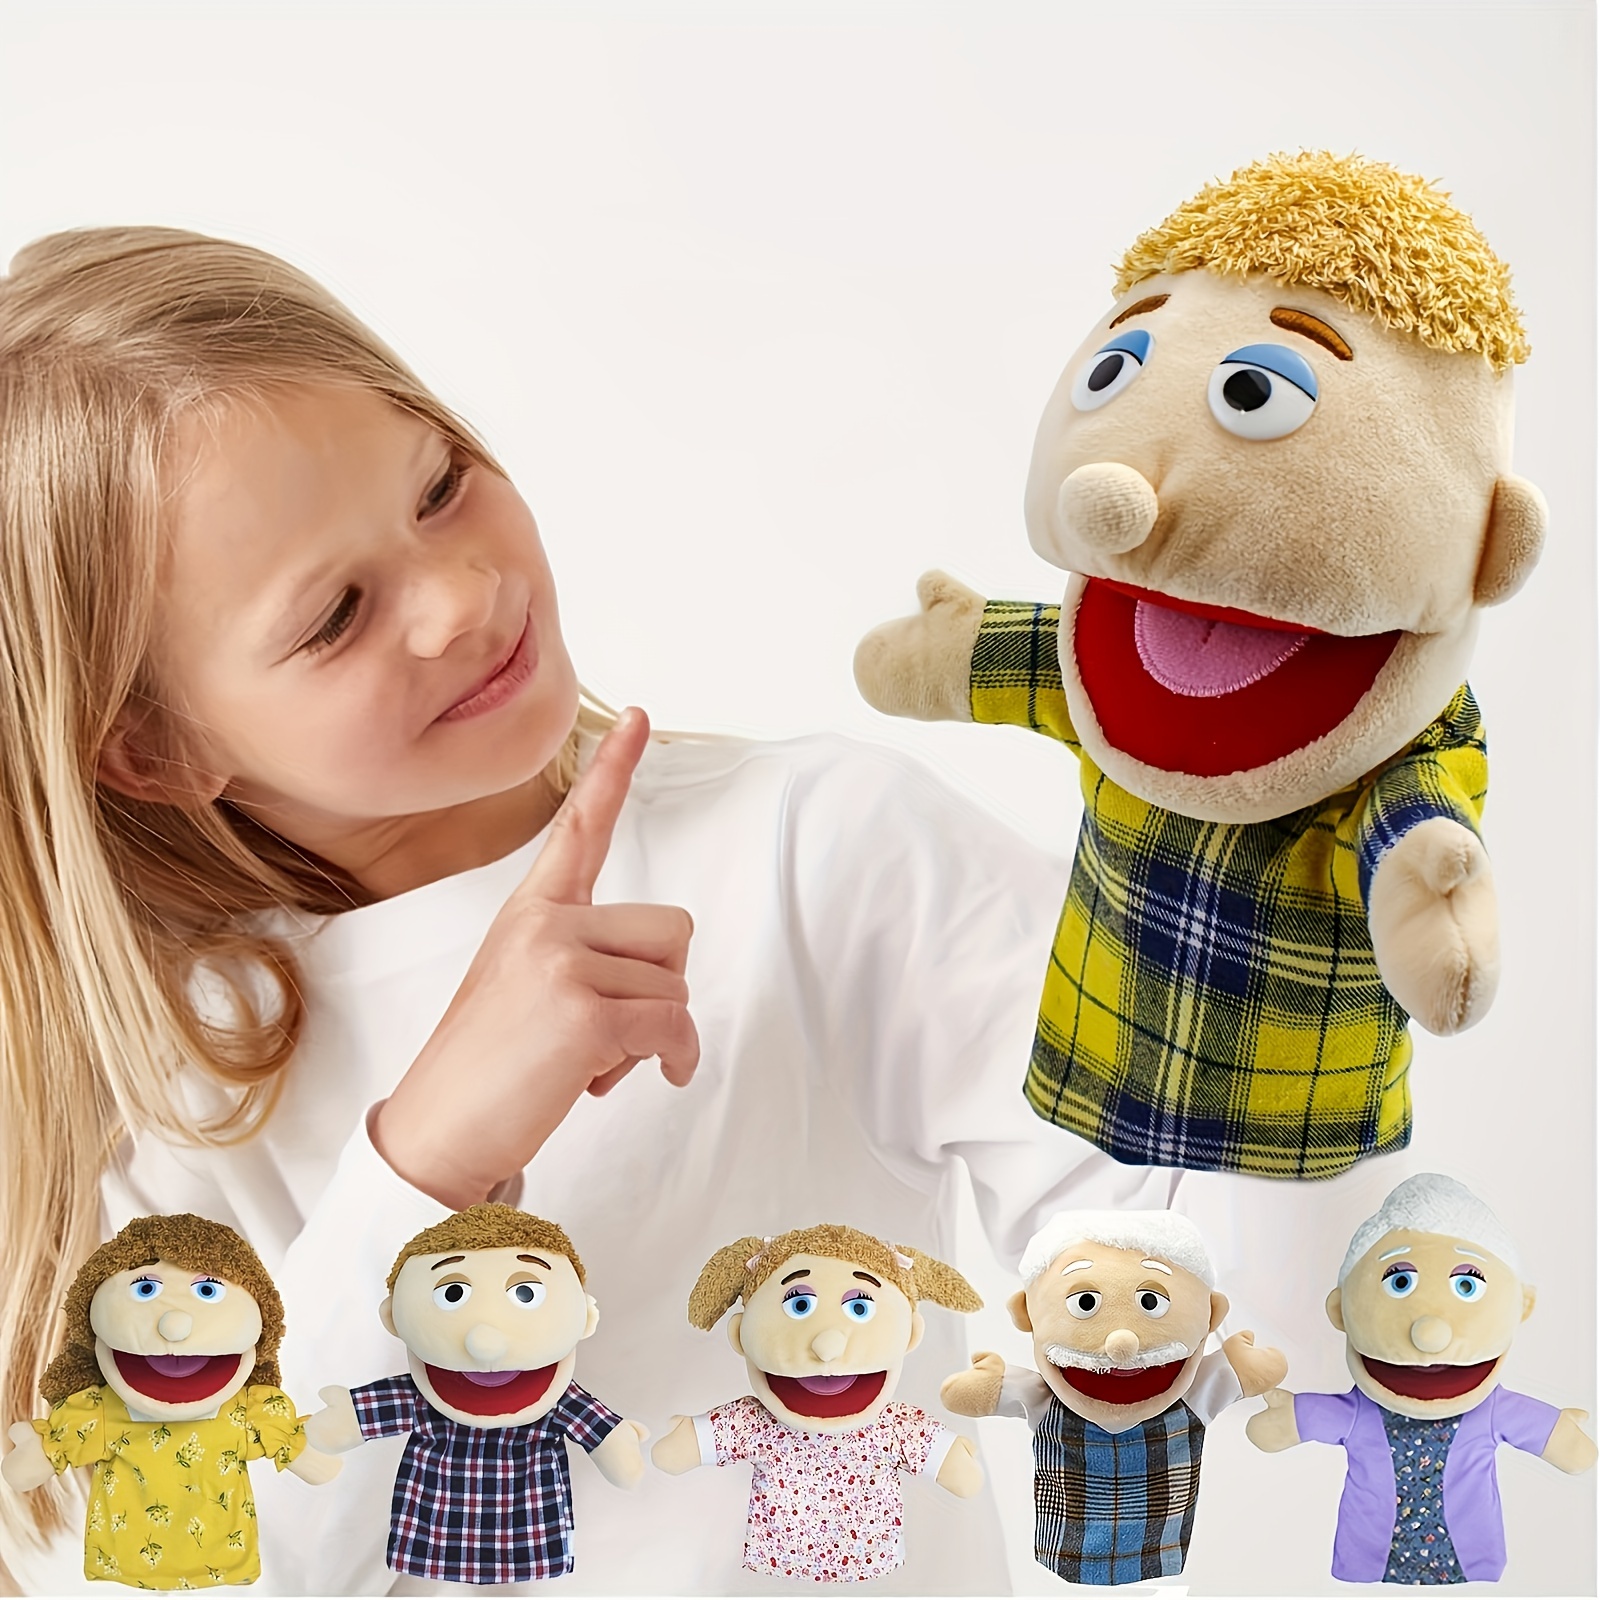 Funny Jeffy Boy Puppet Doll Plush Toy Monsters Muppet Jeffy Dolls